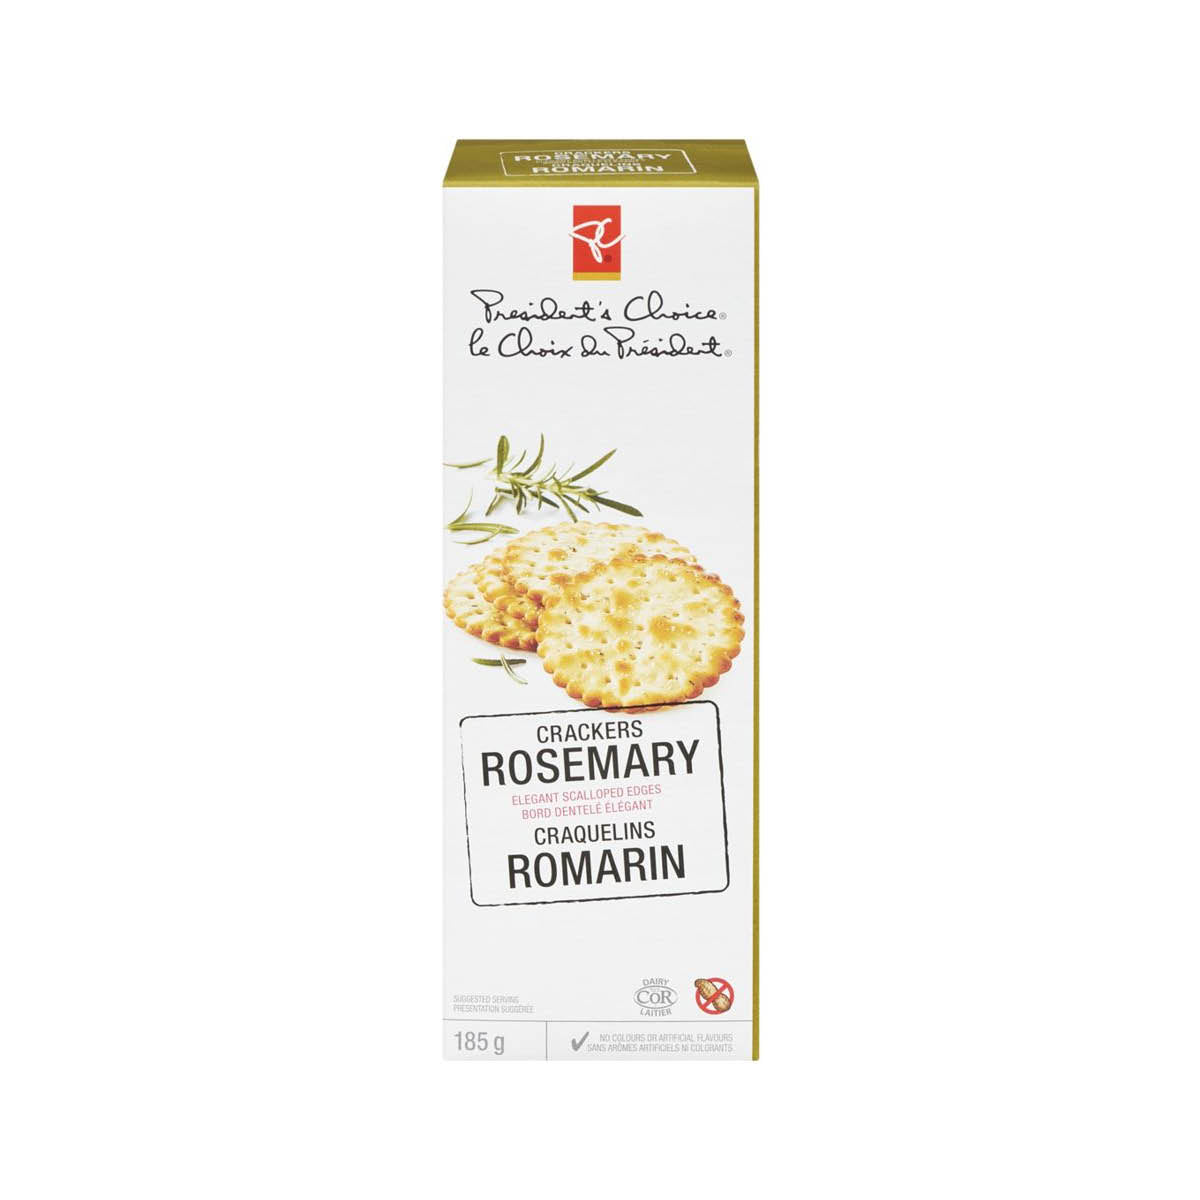 PC Crackers, Rosemary, 185g